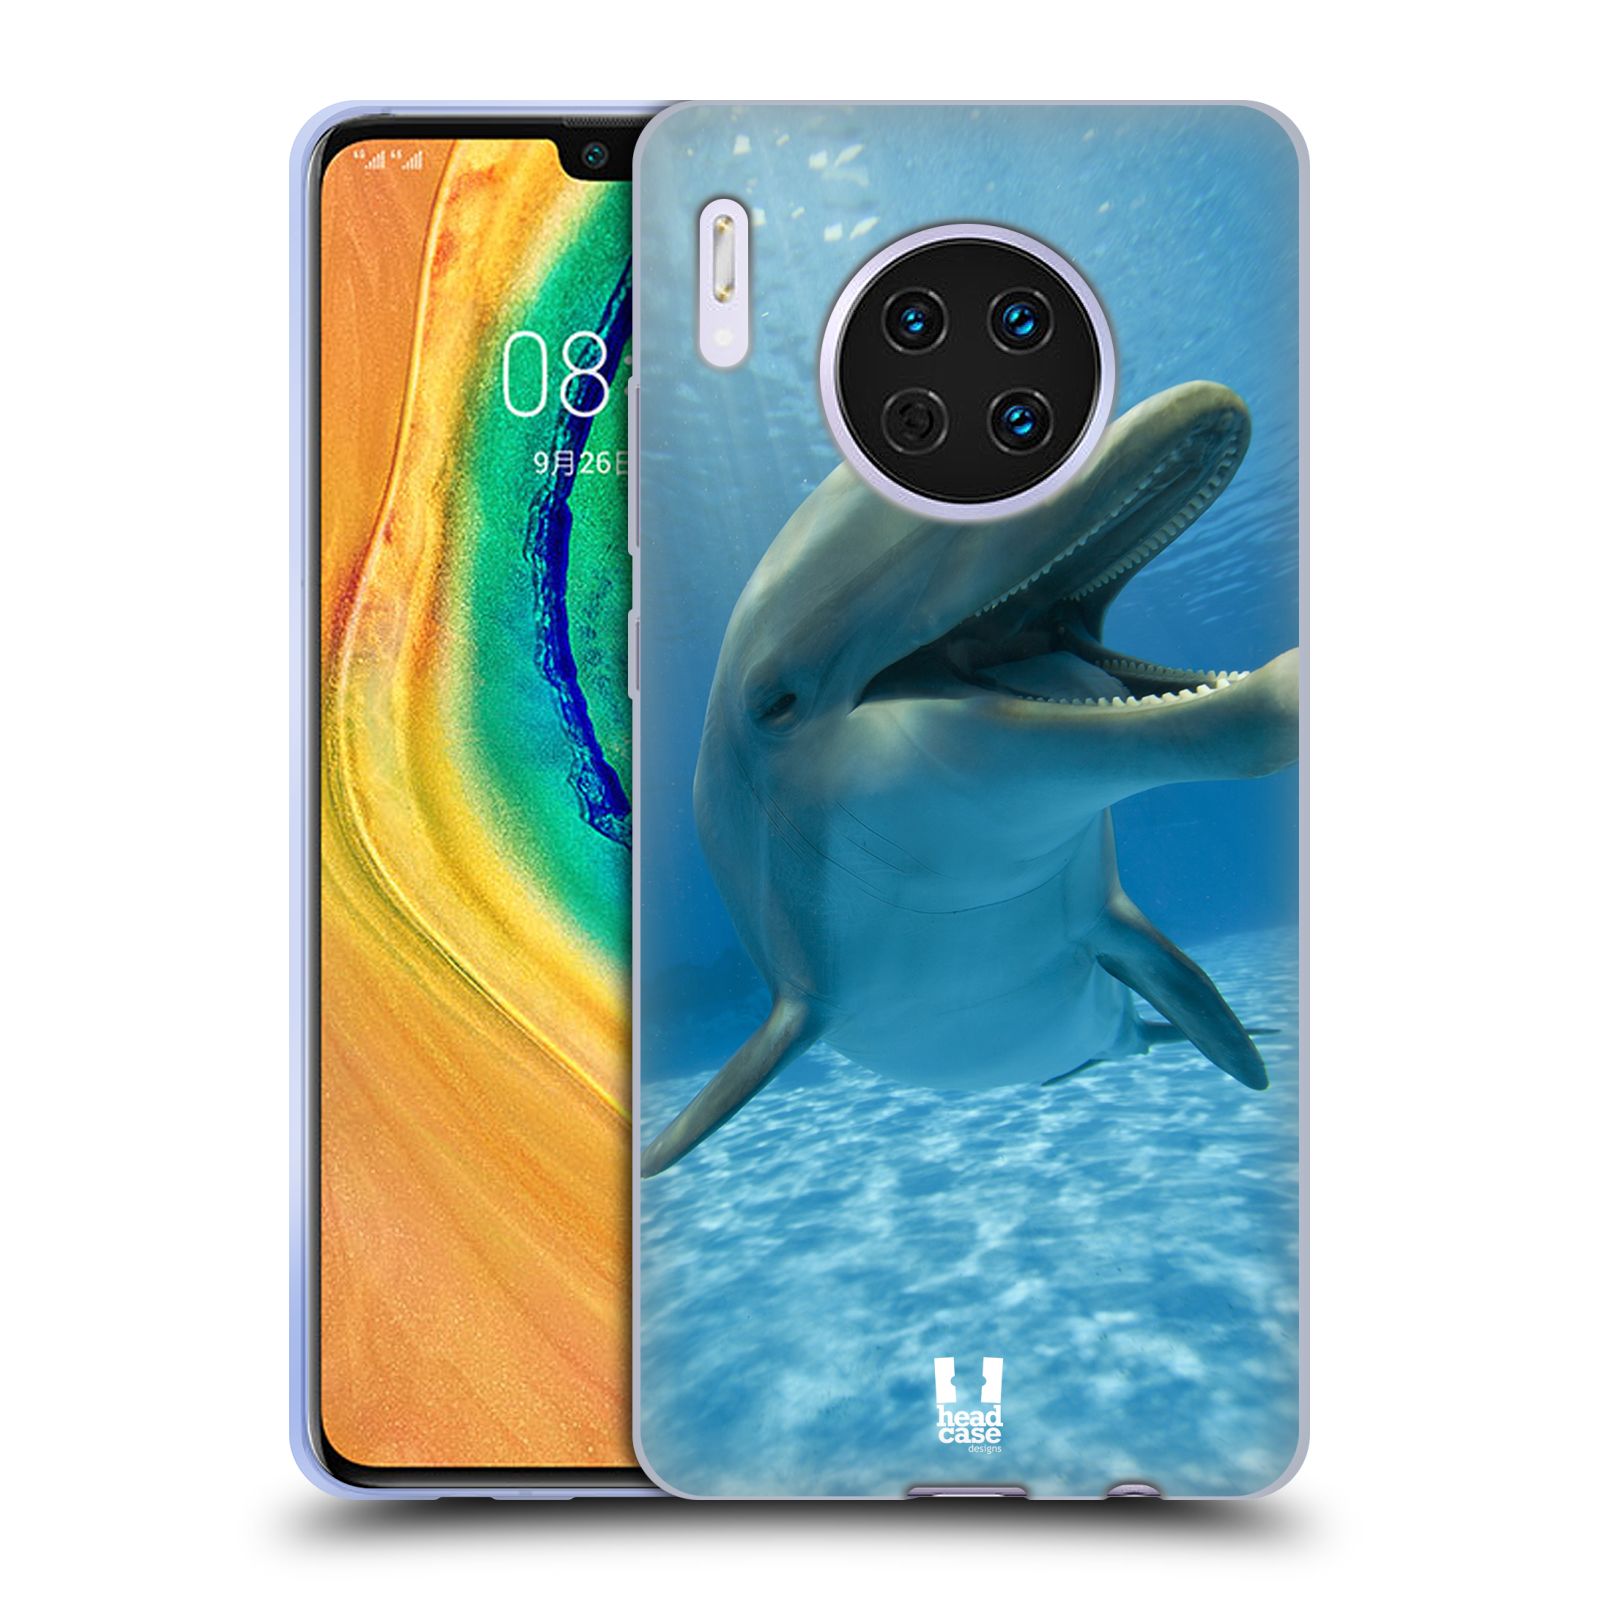 Zadní obal pro mobil Huawei Mate 30 - HEAD CASE - Svět zvířat delfín v moři